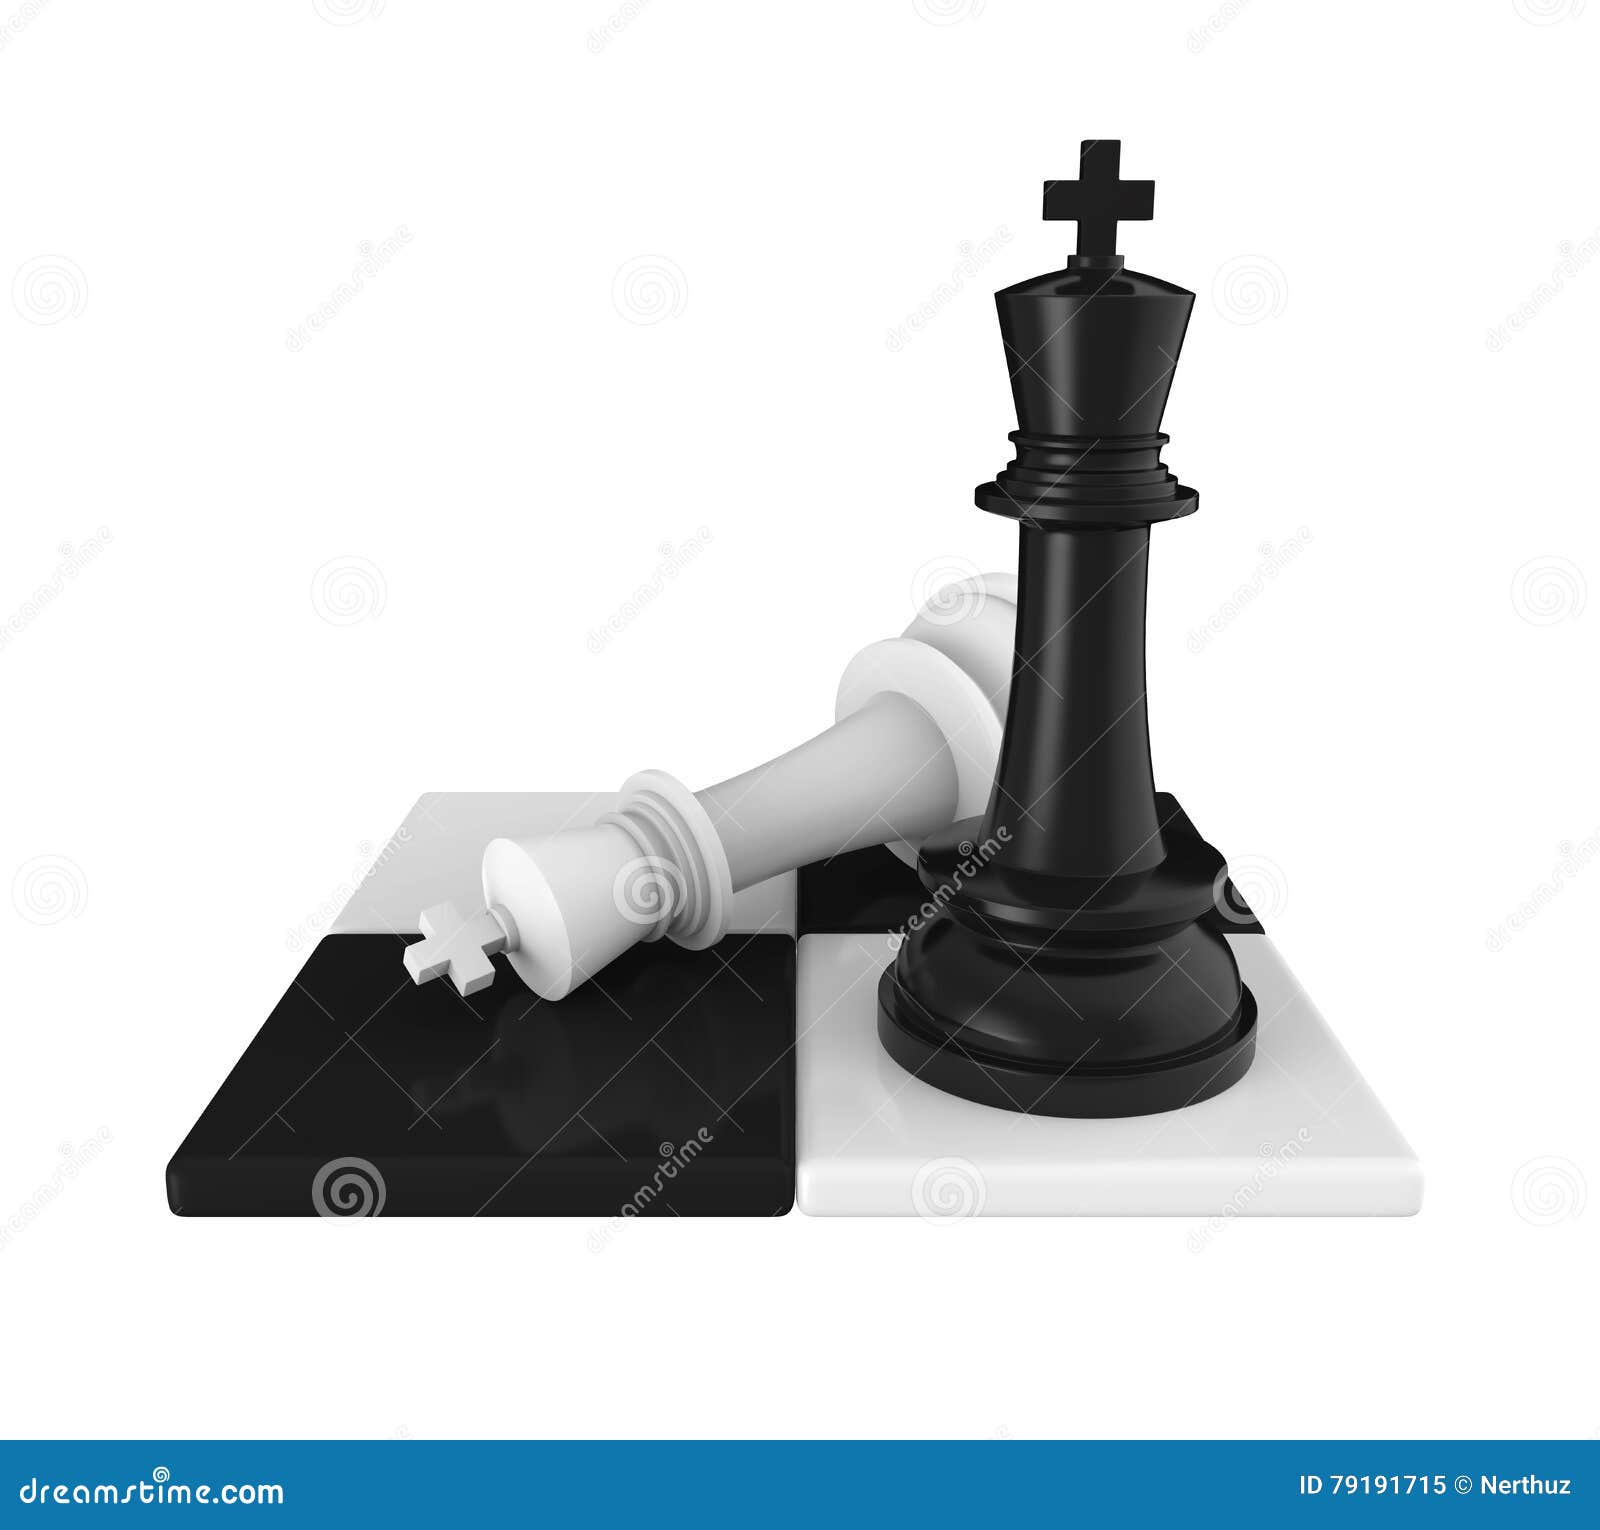 CheckMate CheckMate dominar o jogo de xadrez e vida - FasterCapital